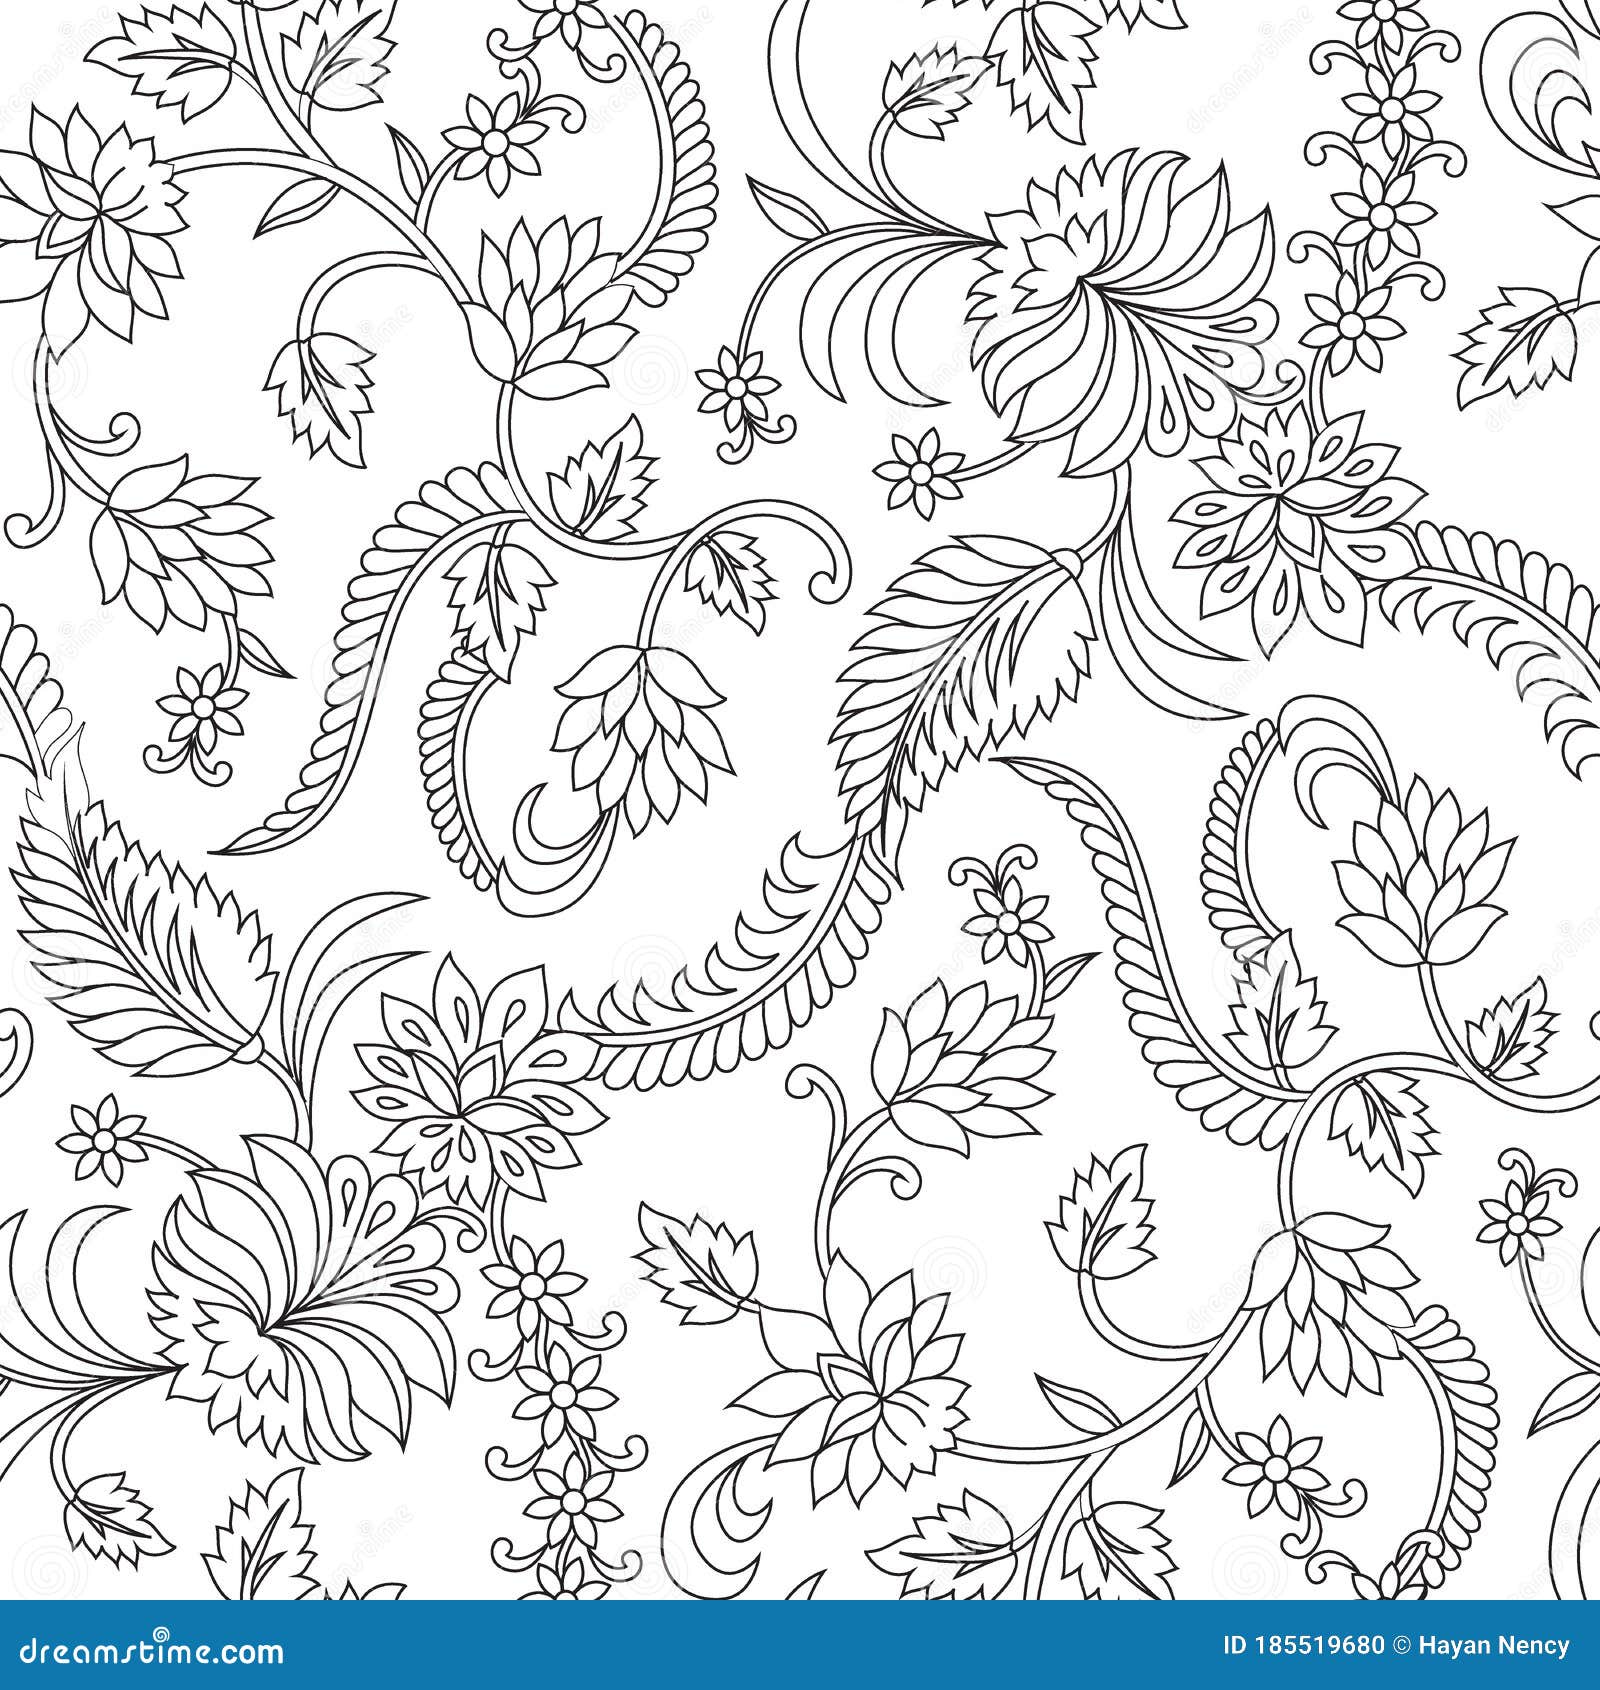 https://thumbs.dreamstime.com/z/seamless-black-white-paisley-pattern-white-seamless-black-white-traditional-paisley-white-background-flower-185519680.jpg